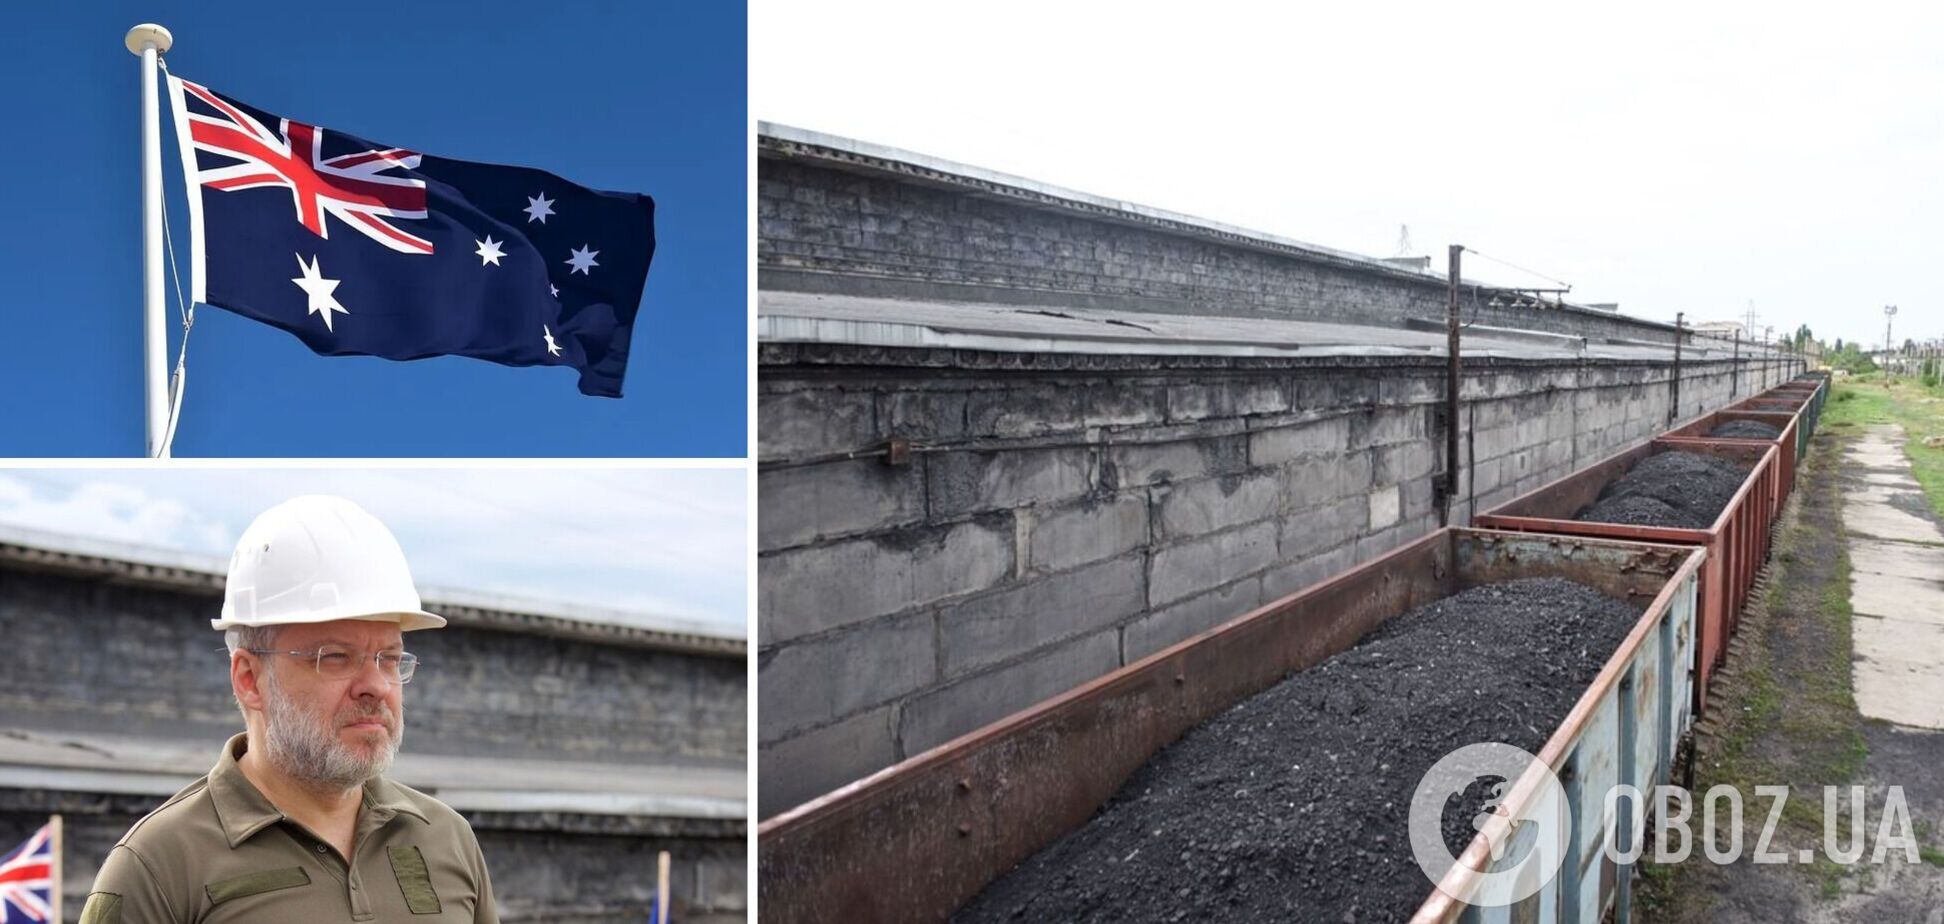 Австралия предоставила Украине 79 тыс. тонн угля